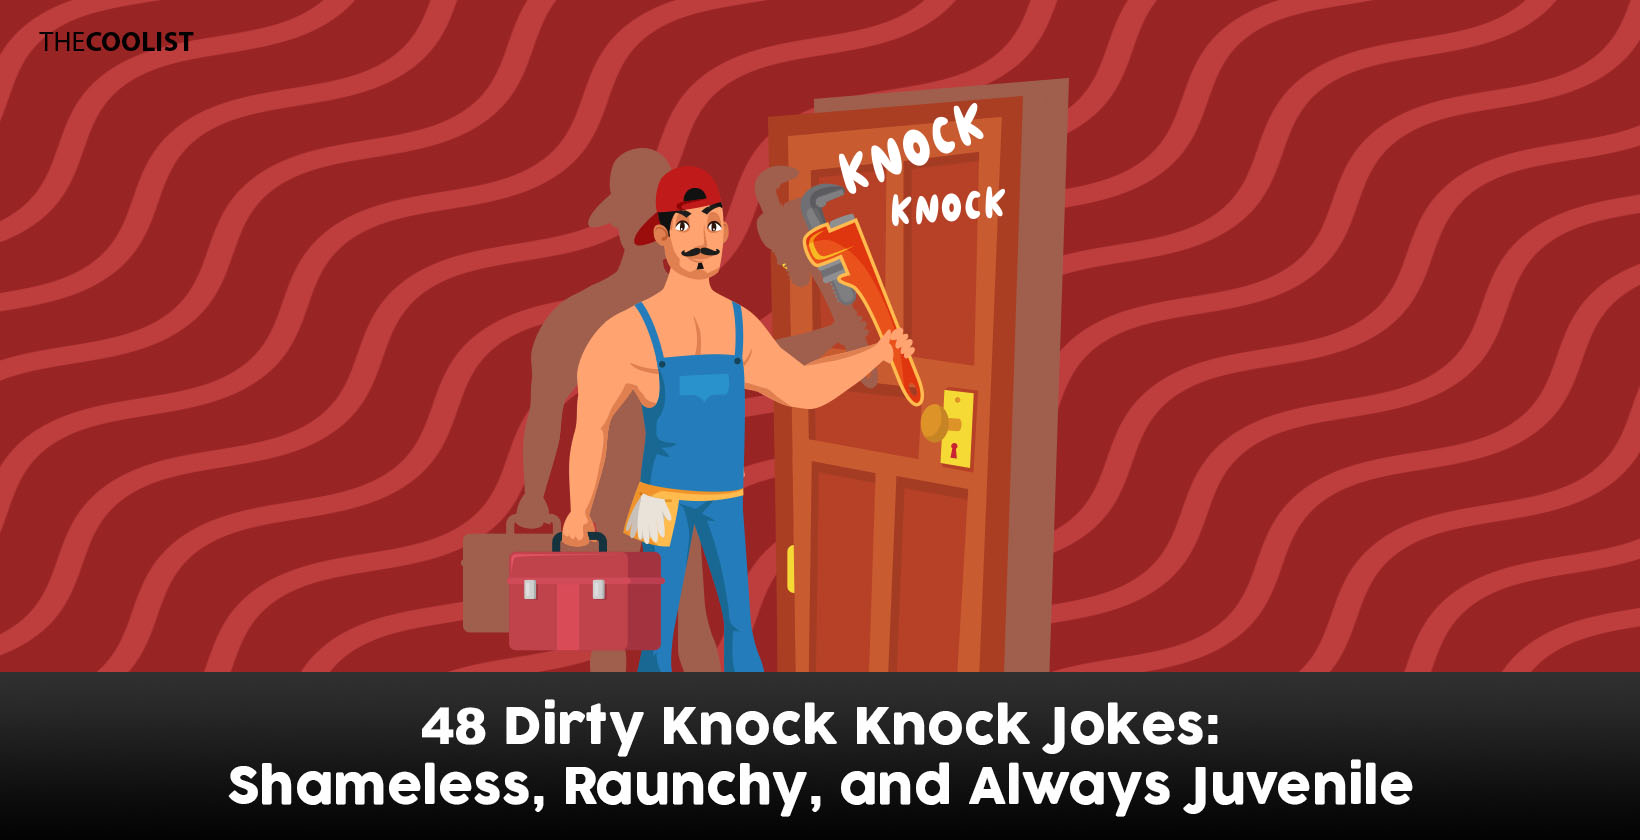 ari song share filthy knock knock jokes photos